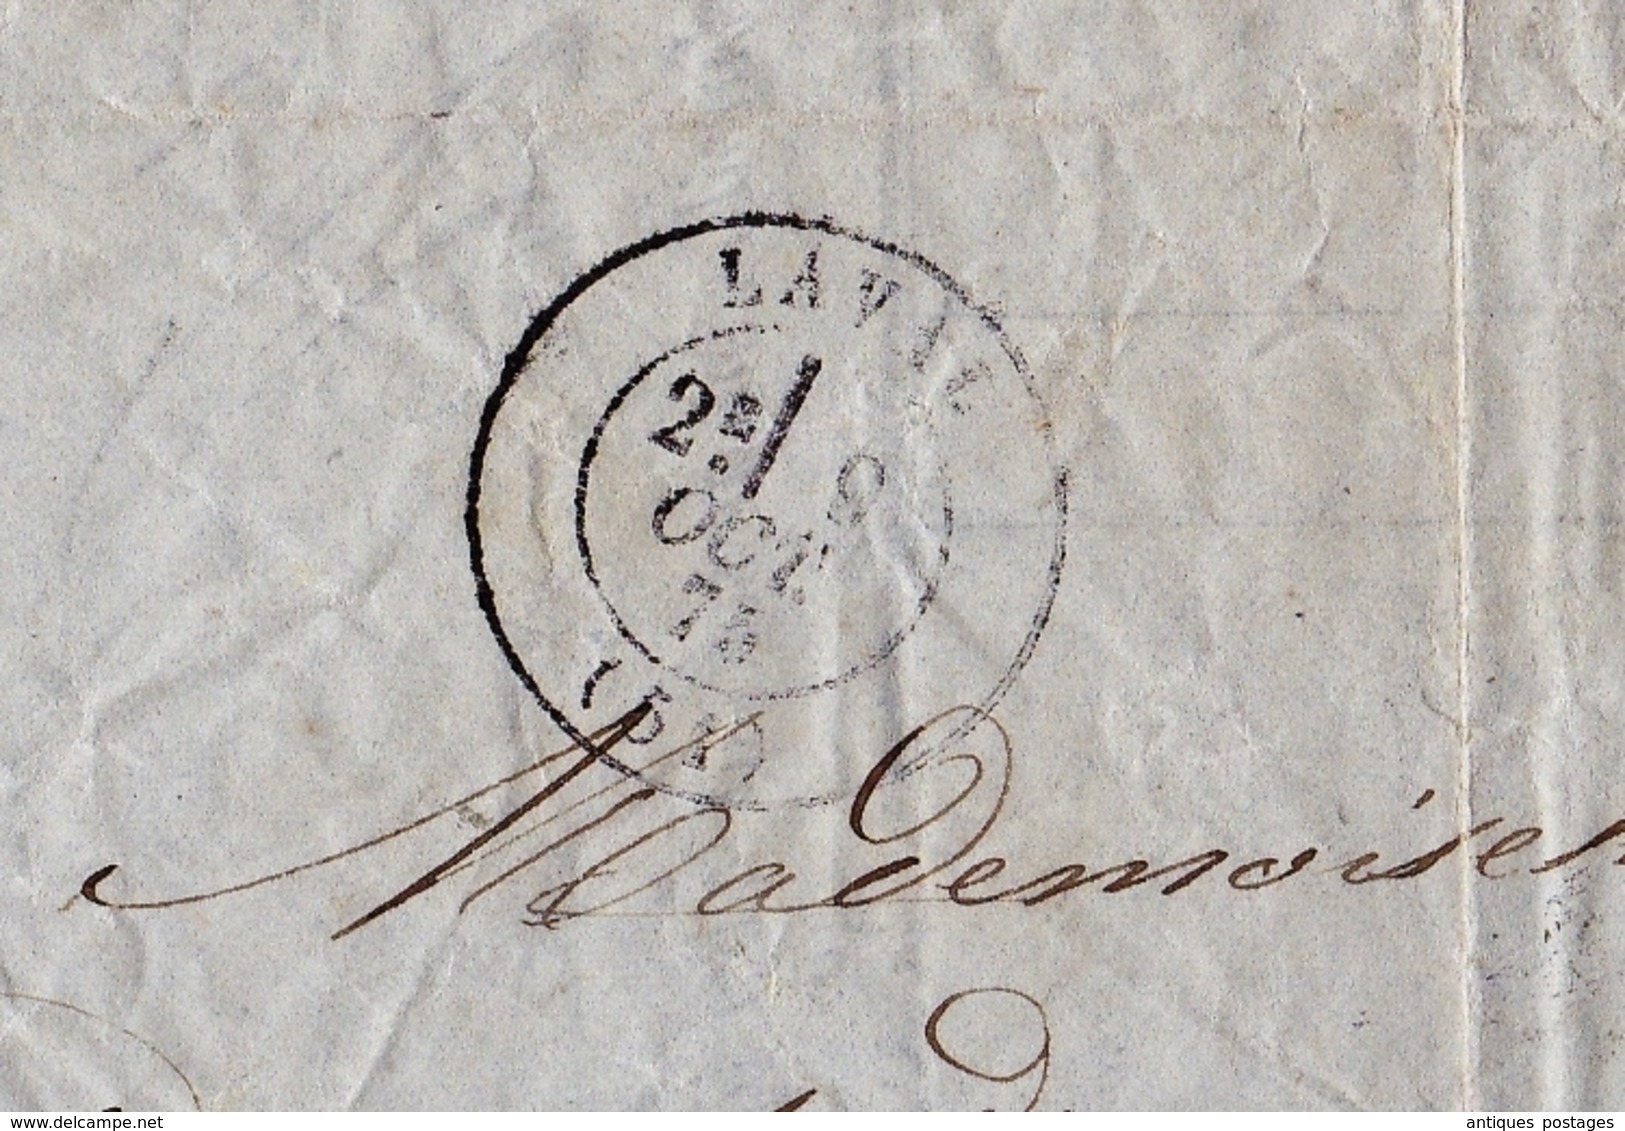 Lettre 1875 Laval Mayenne Marçais Fils Vins en Gros Bazougers Quittances Reçus et Décharges 10 Centimes Eau de Vie